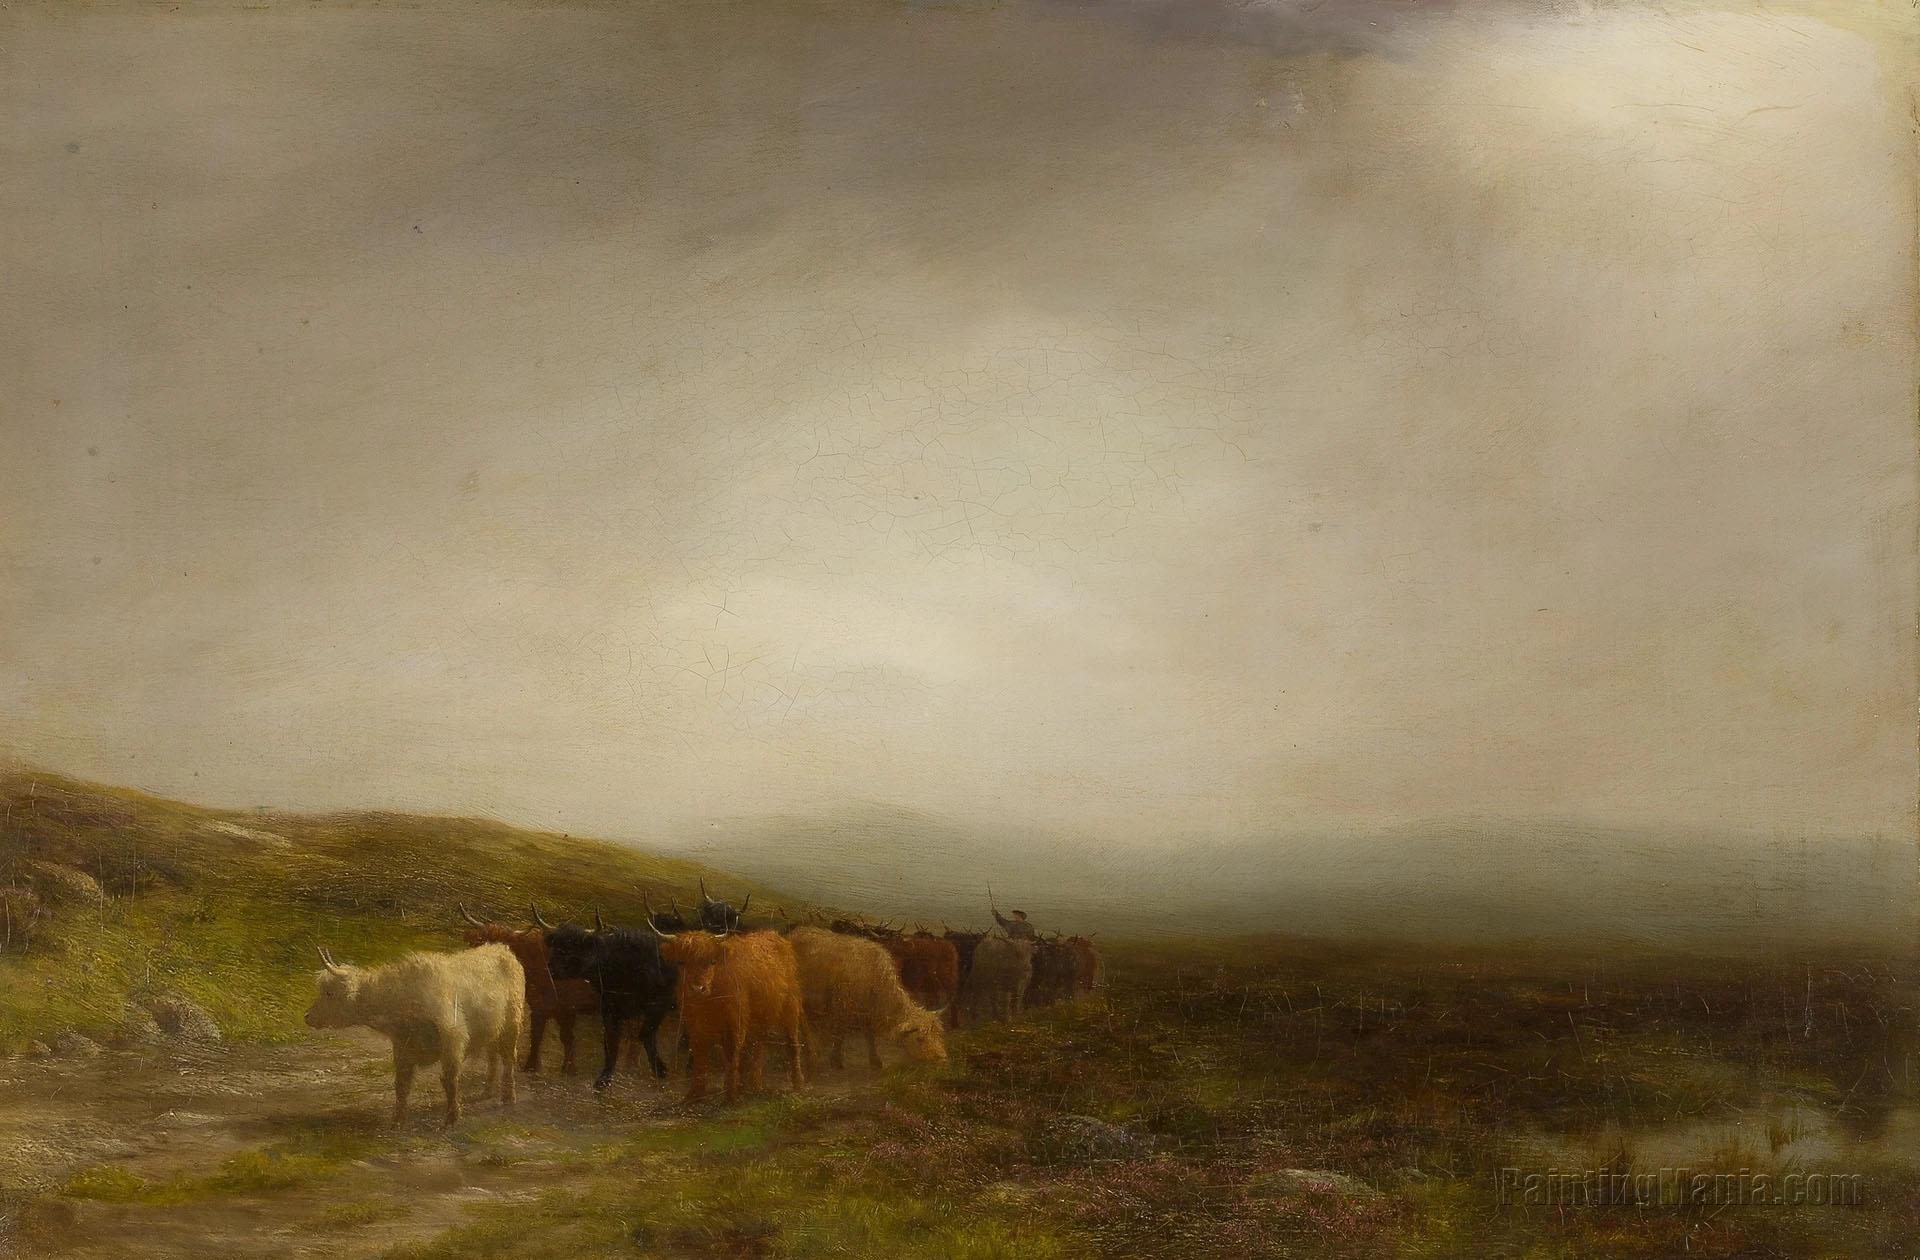 Cattle on a Misty Hillside